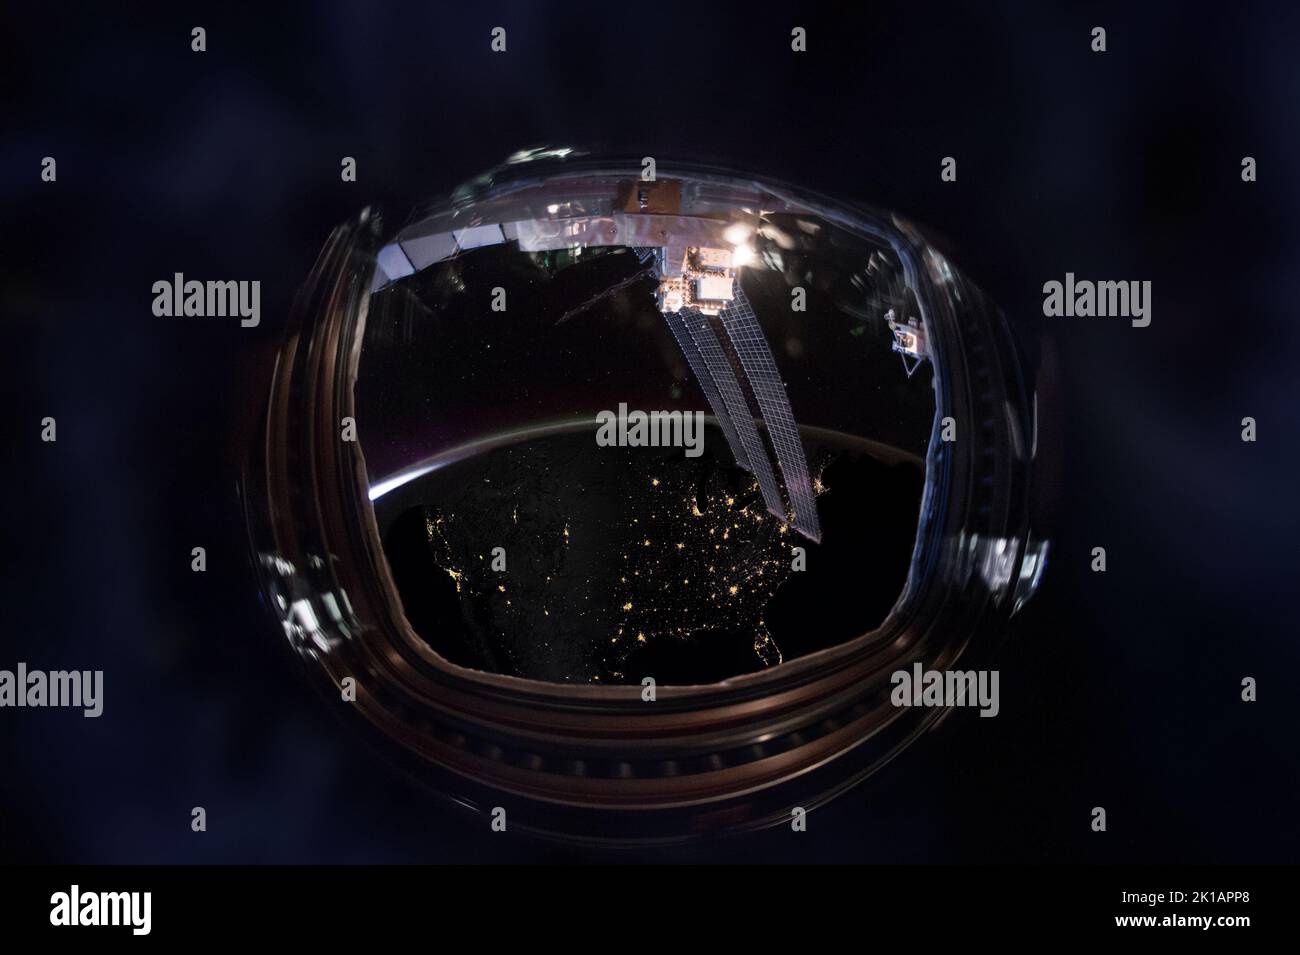 Oblò grandangolo vista notturna della Terra con mappa degli Stati Uniti delle città illuminate. Elementi di questa immagine forniti dalla NASA. Foto Stock